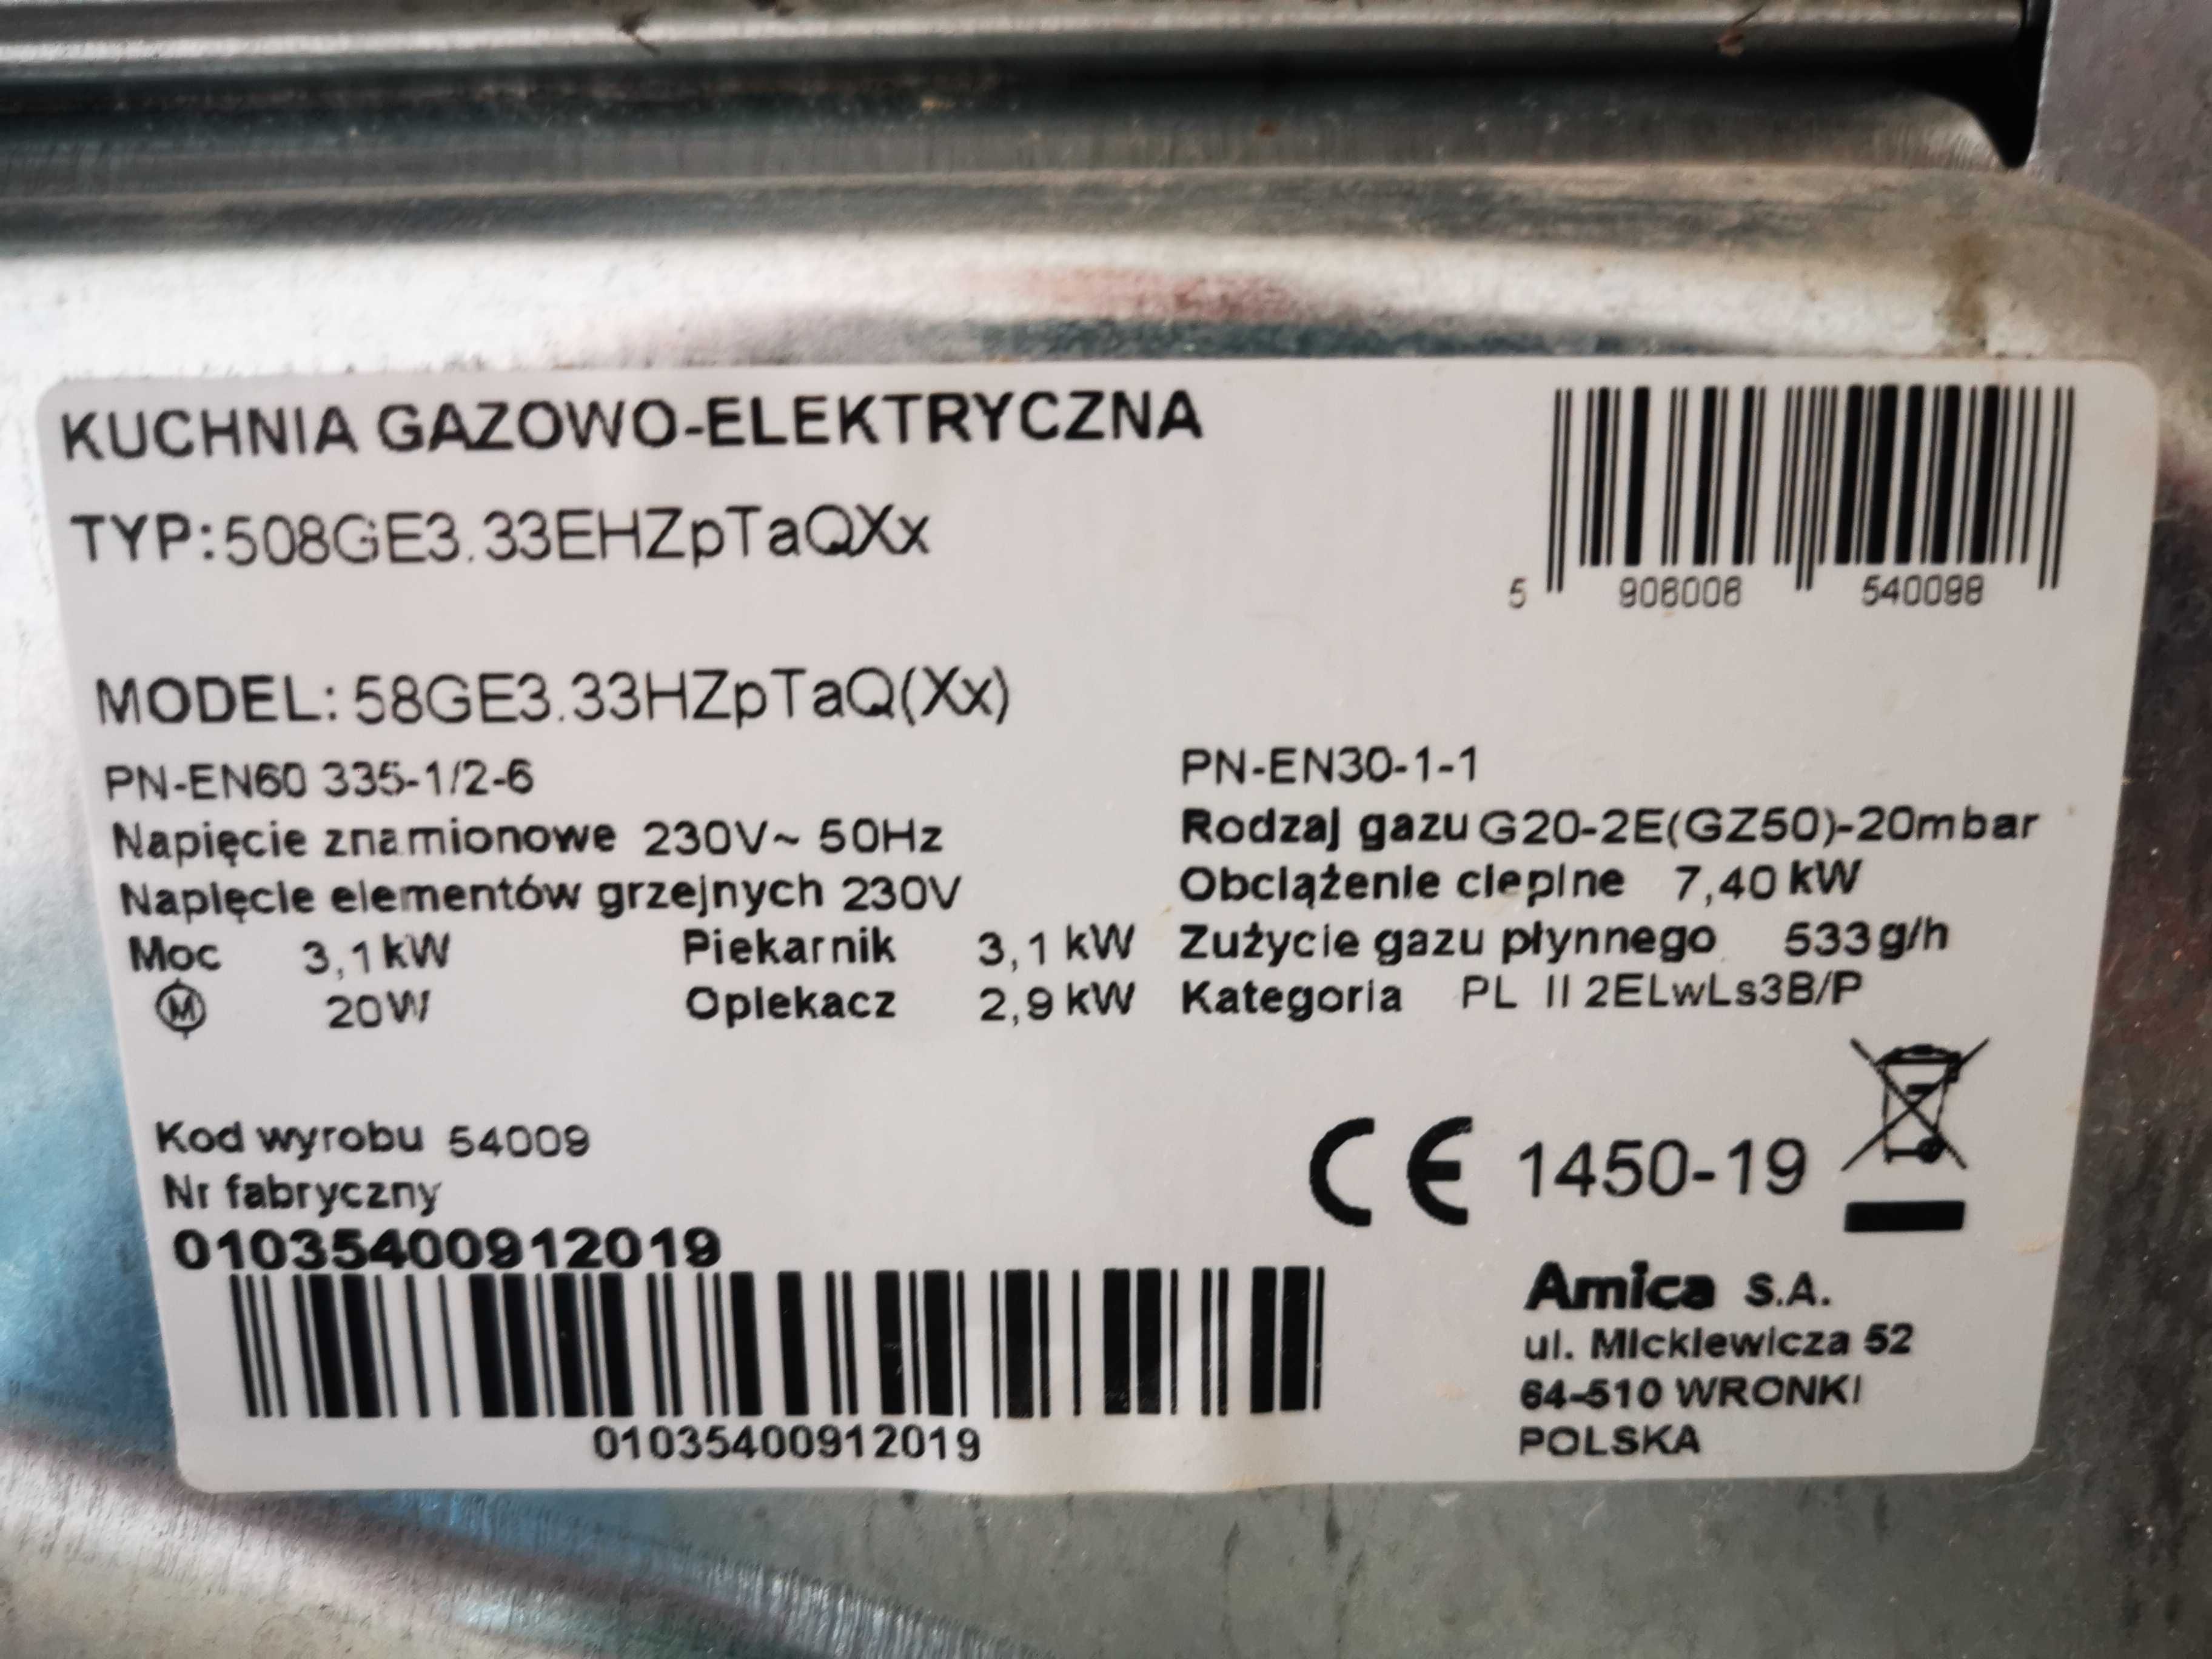 Amica - Kuchenka gazowo-elektryczna 58GE3